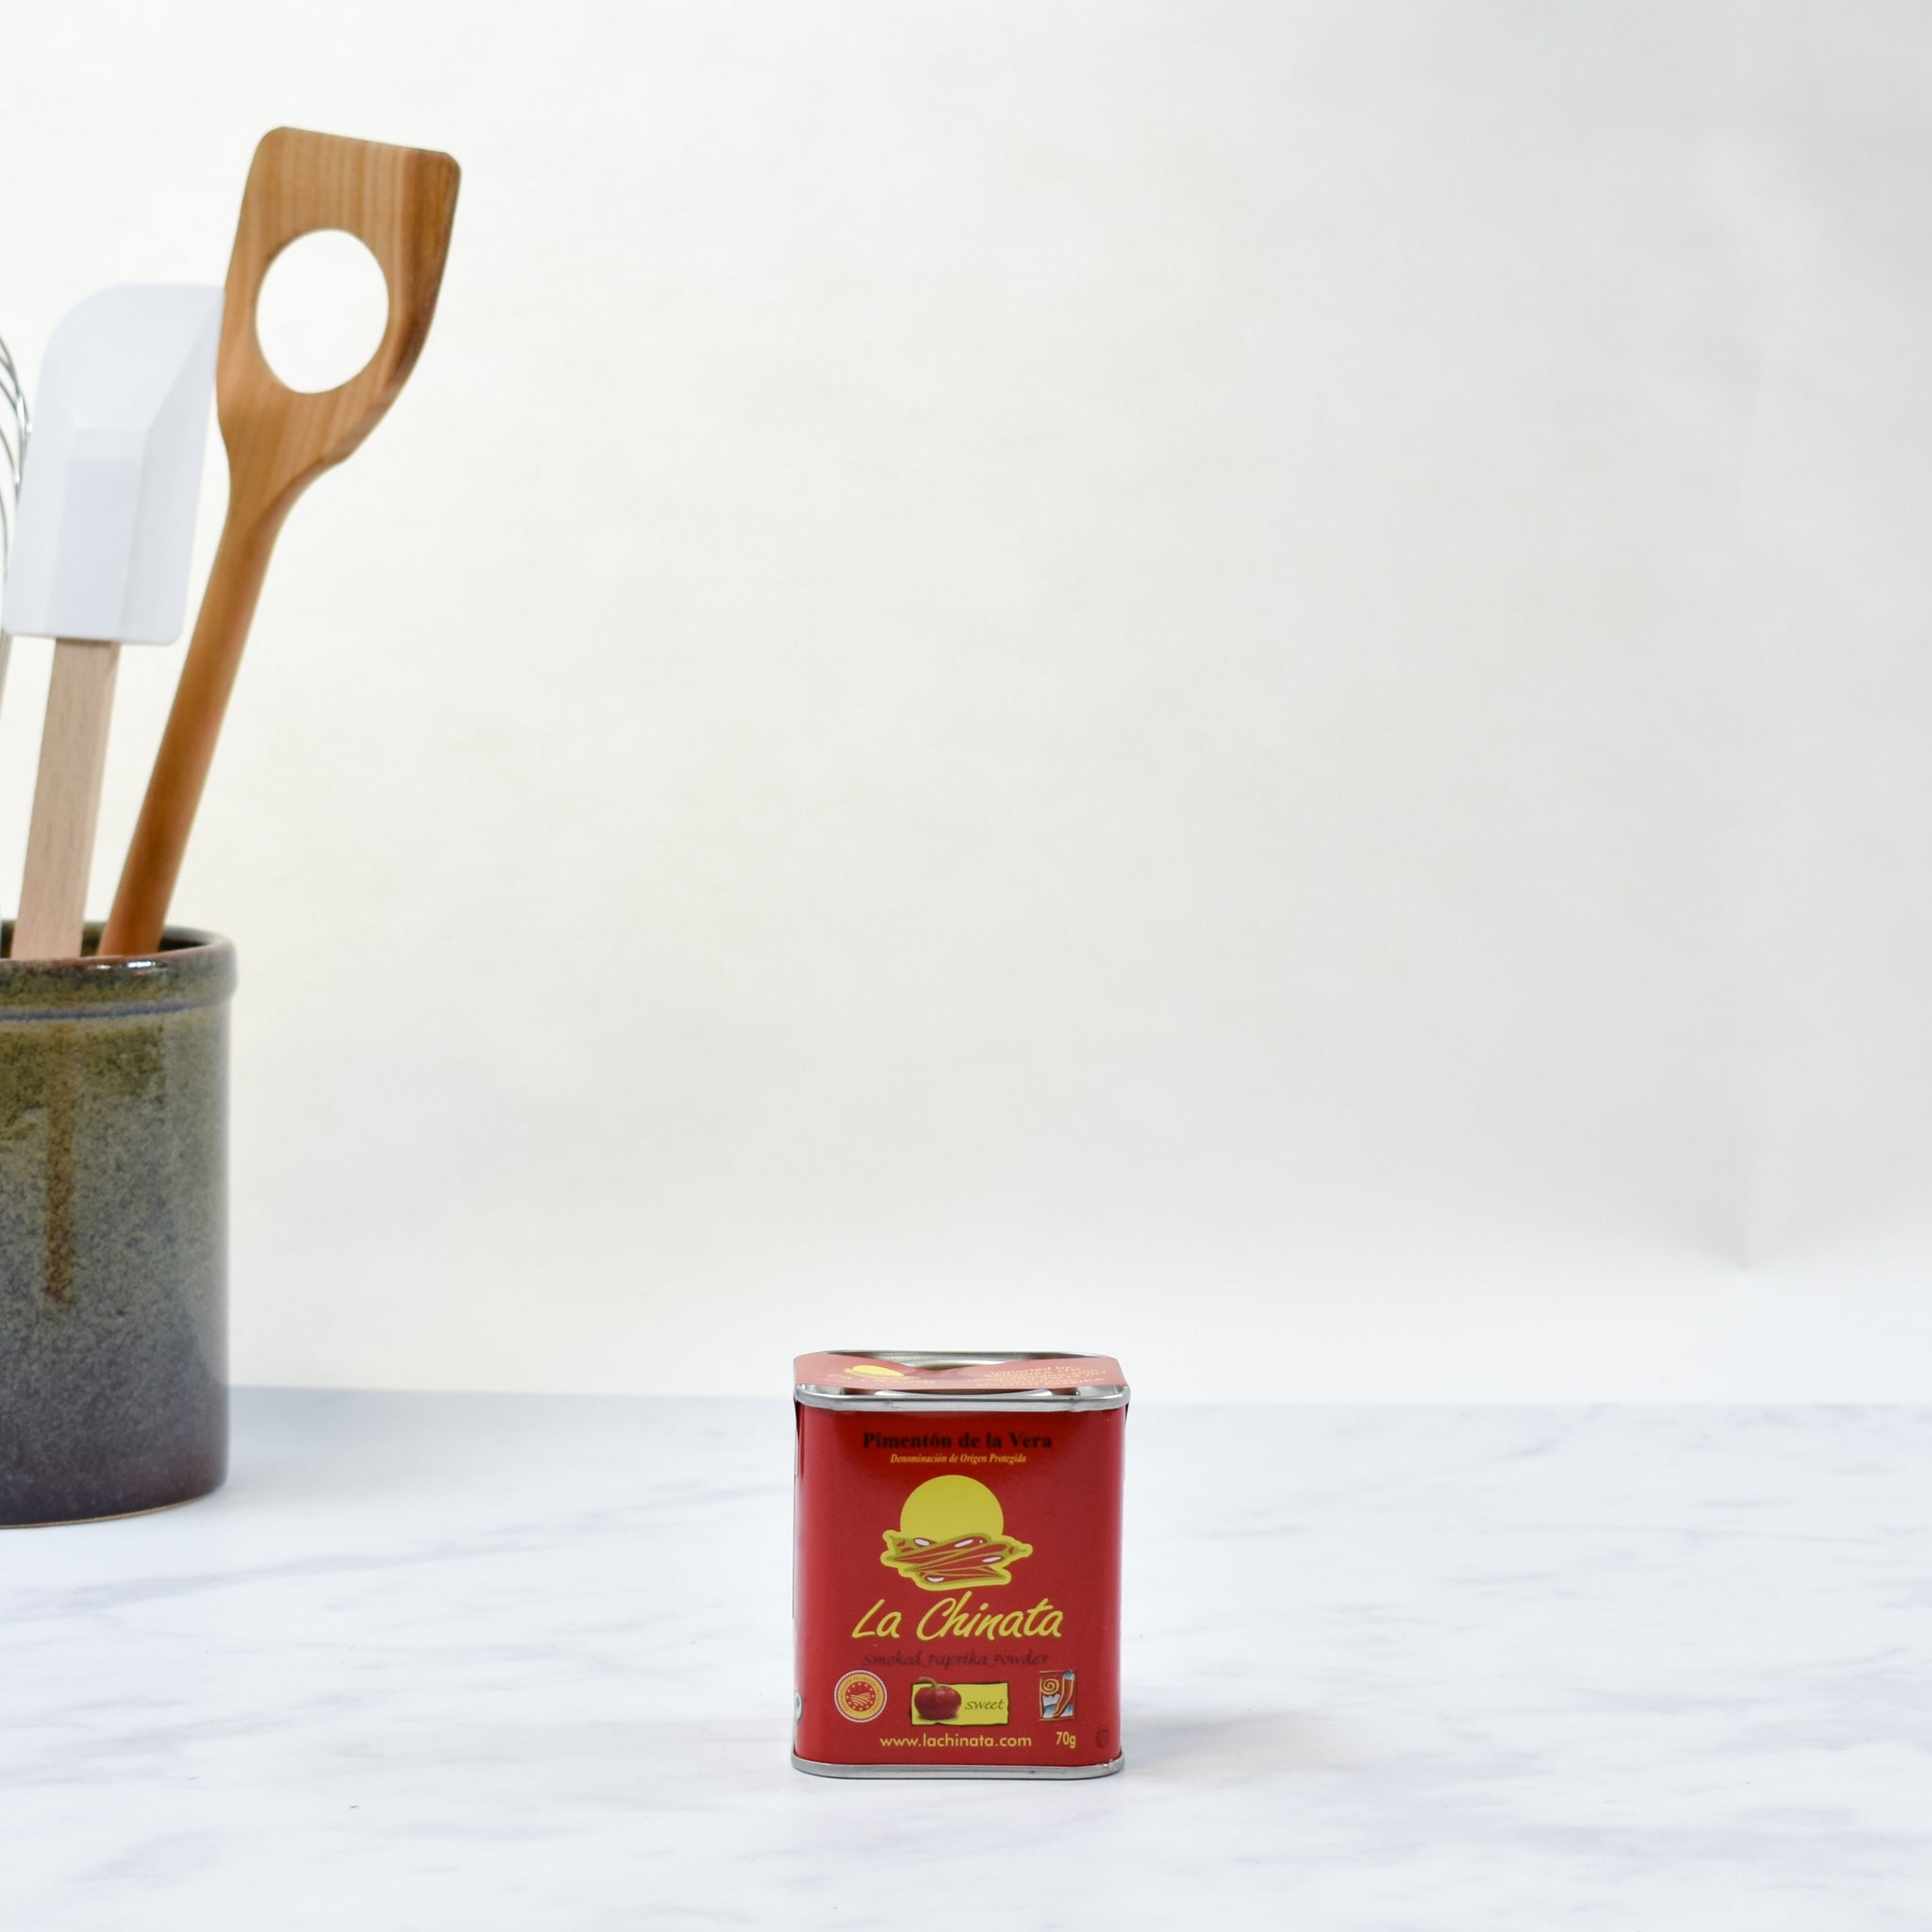 La Chinata Sweet Smoked Paprika 70g Ingredients Seasonings Spanish Food Lifestyle Packaging Shot